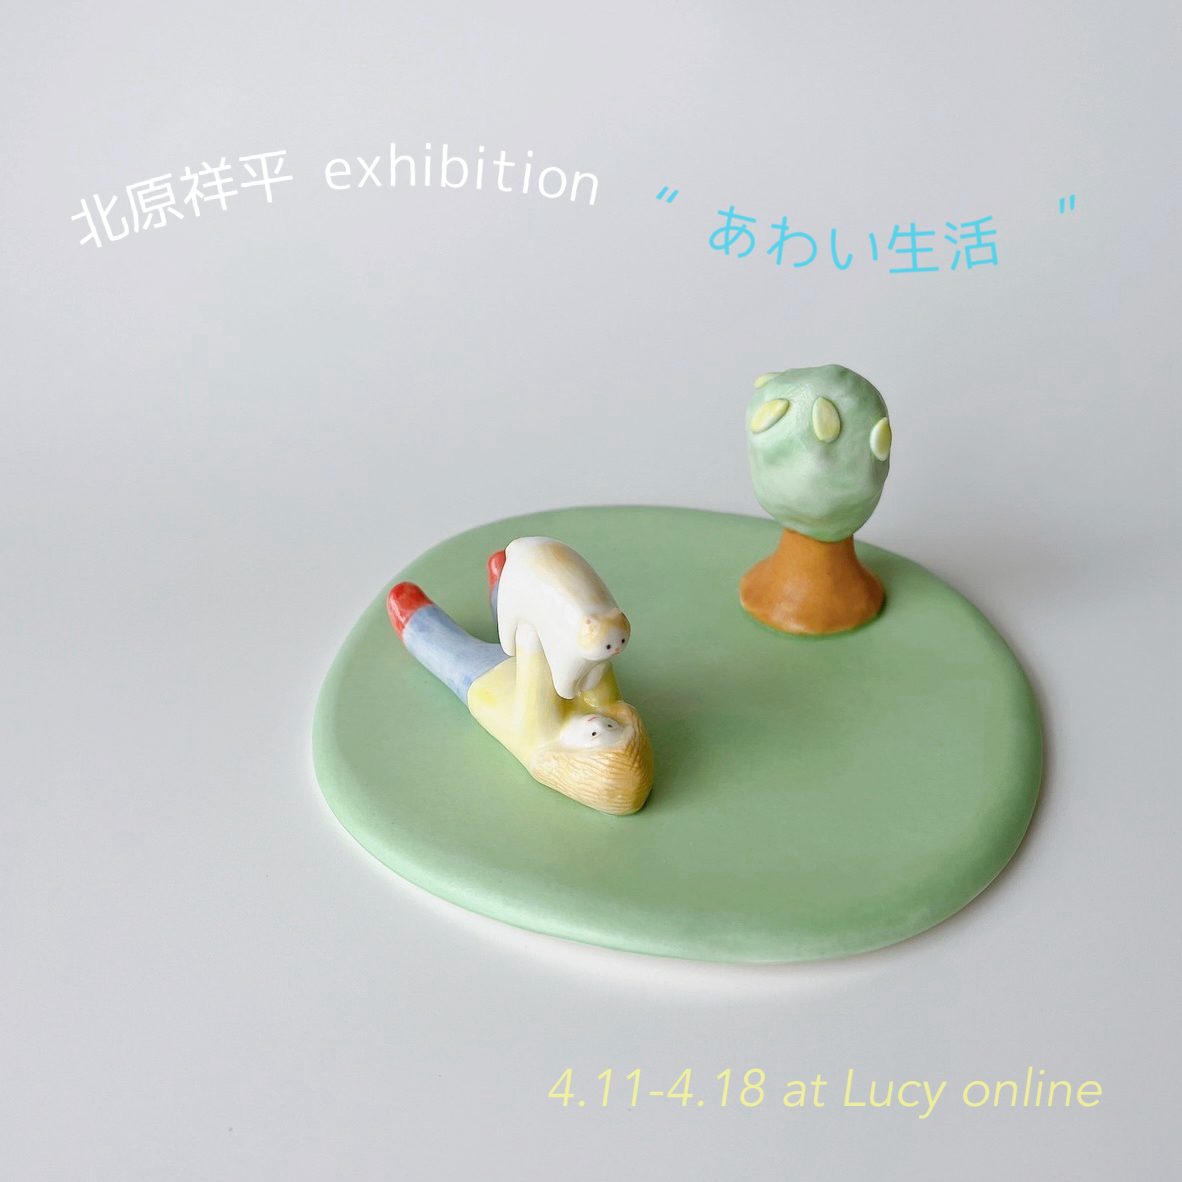 北原祥平 exhibition “あわい生活”